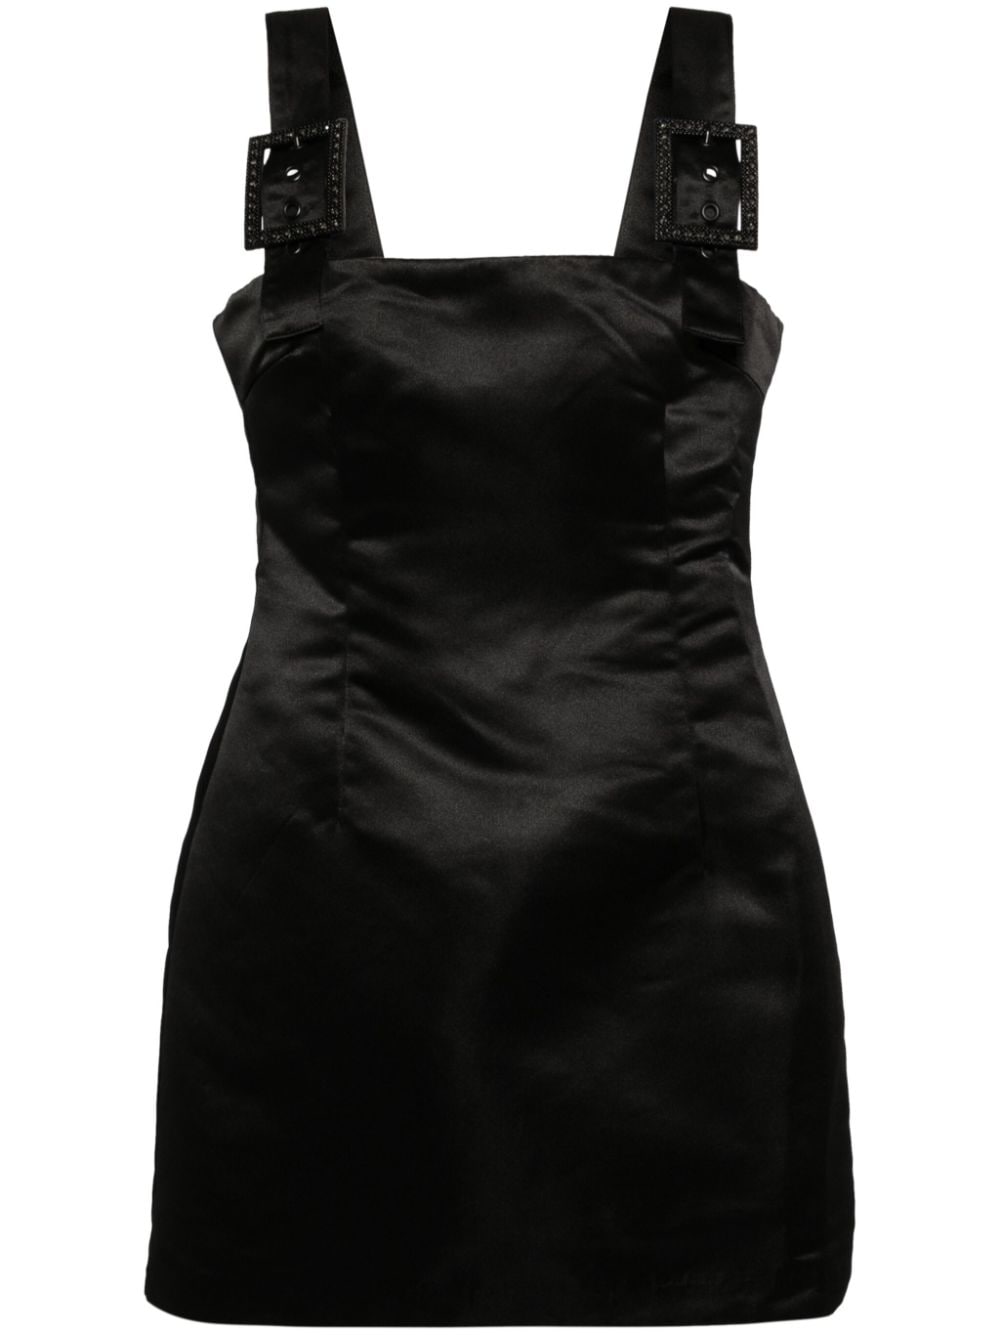 Cynthia Rowley Gigi Crystal Buckle Satin Dress - Black